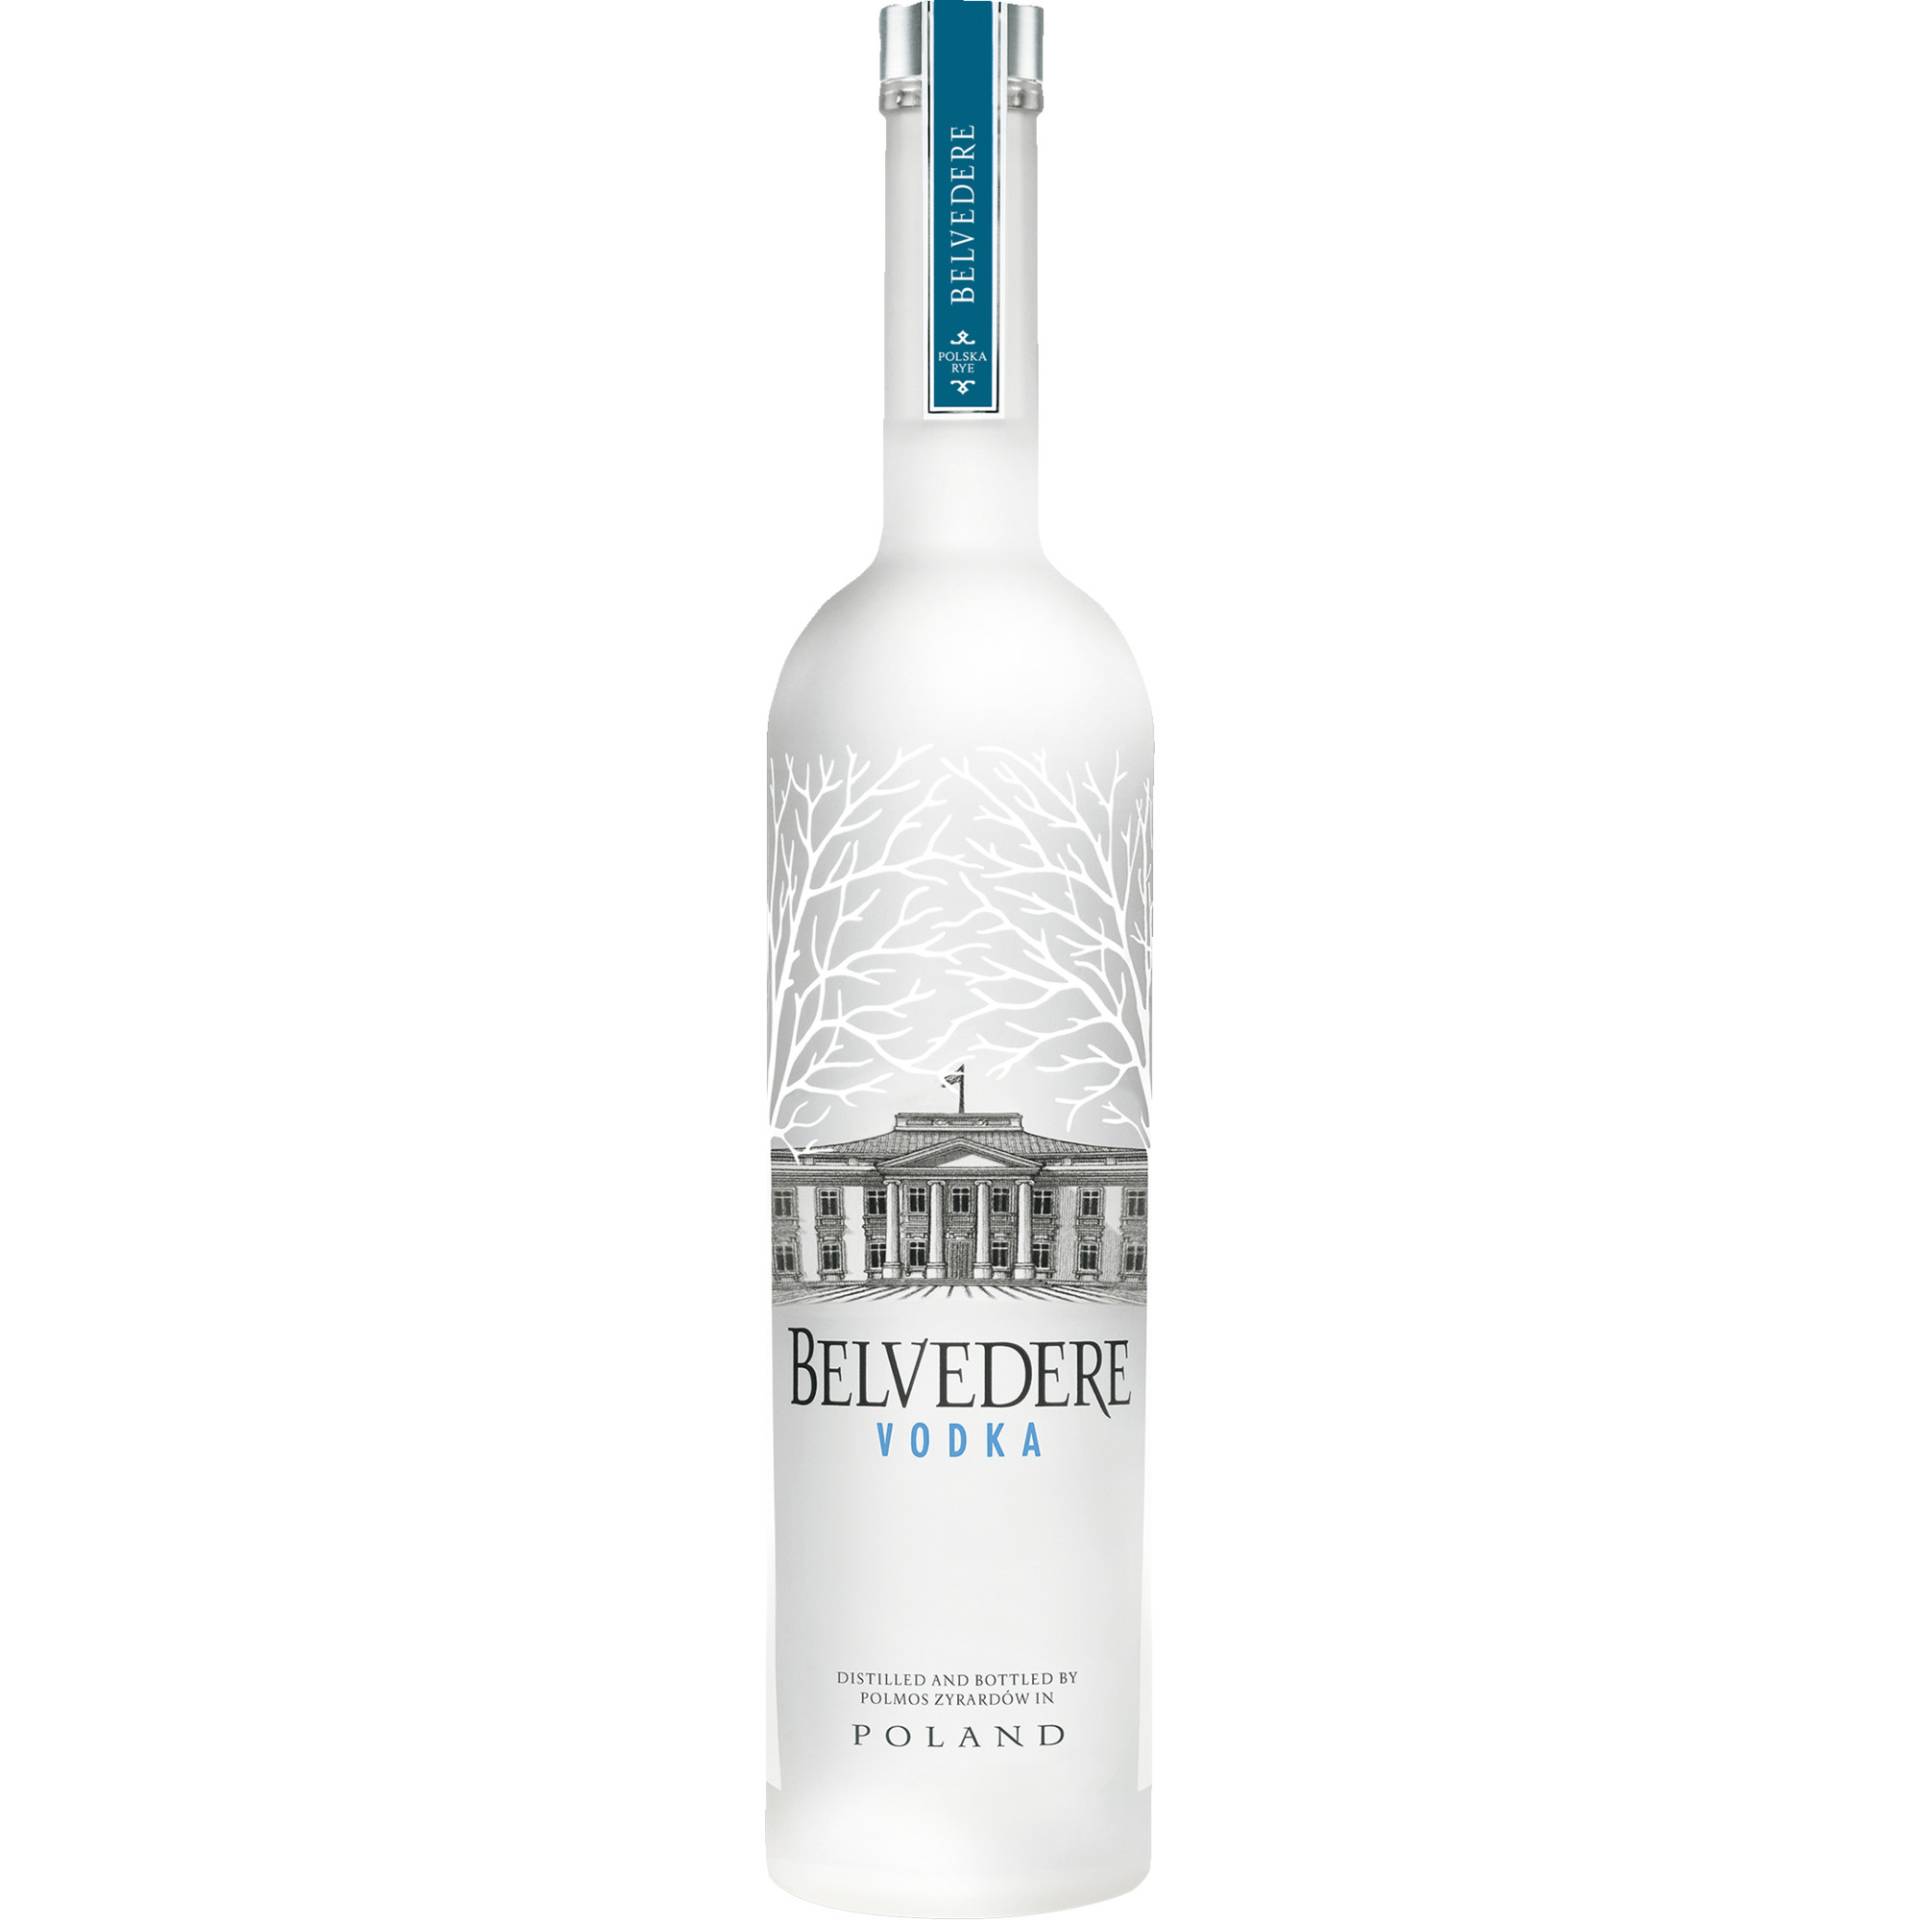 Belvedere Pure Vodka, Polen, 0,7 L, 40% Vol., Spirituosen von Polmos Zyrardów, 96-300 Zyrardów, Polen